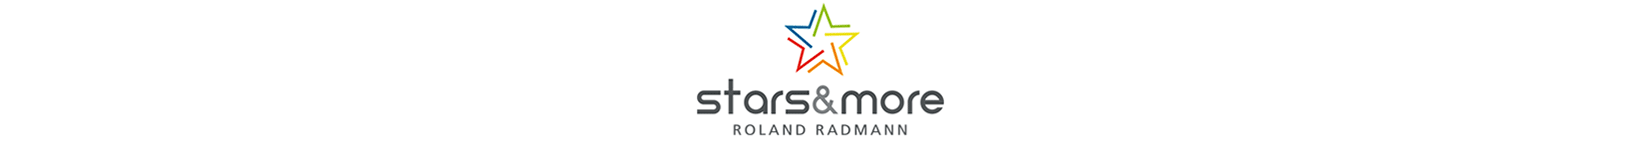 starsandmore-logo.png